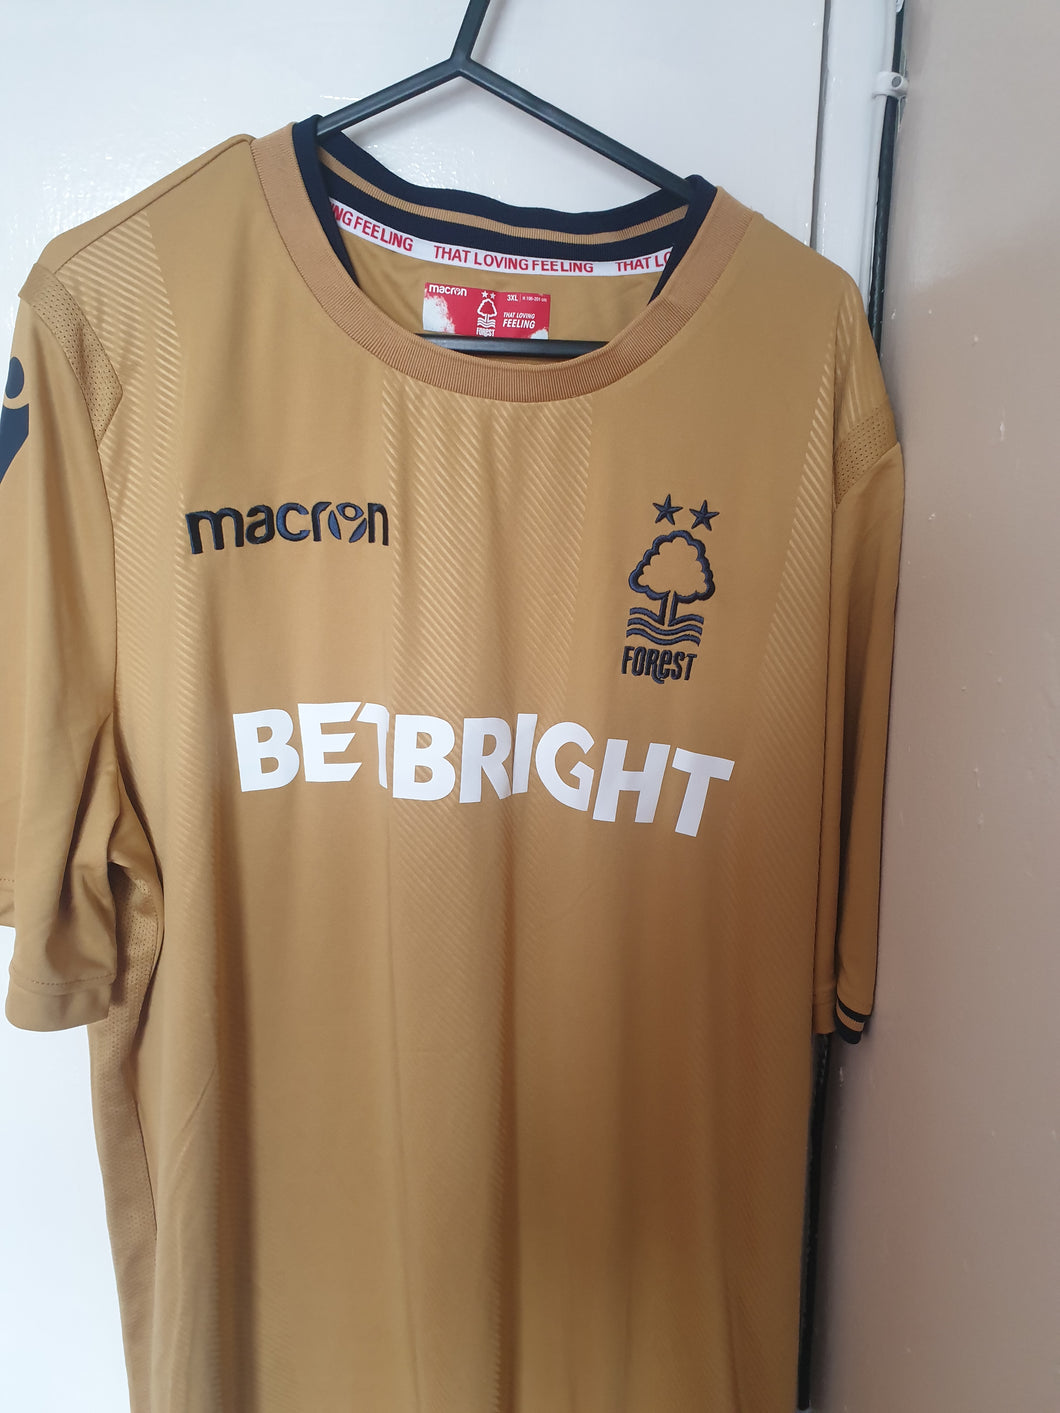 Nottingham Forest 2018-19 Third Shirt (Size 3xl)